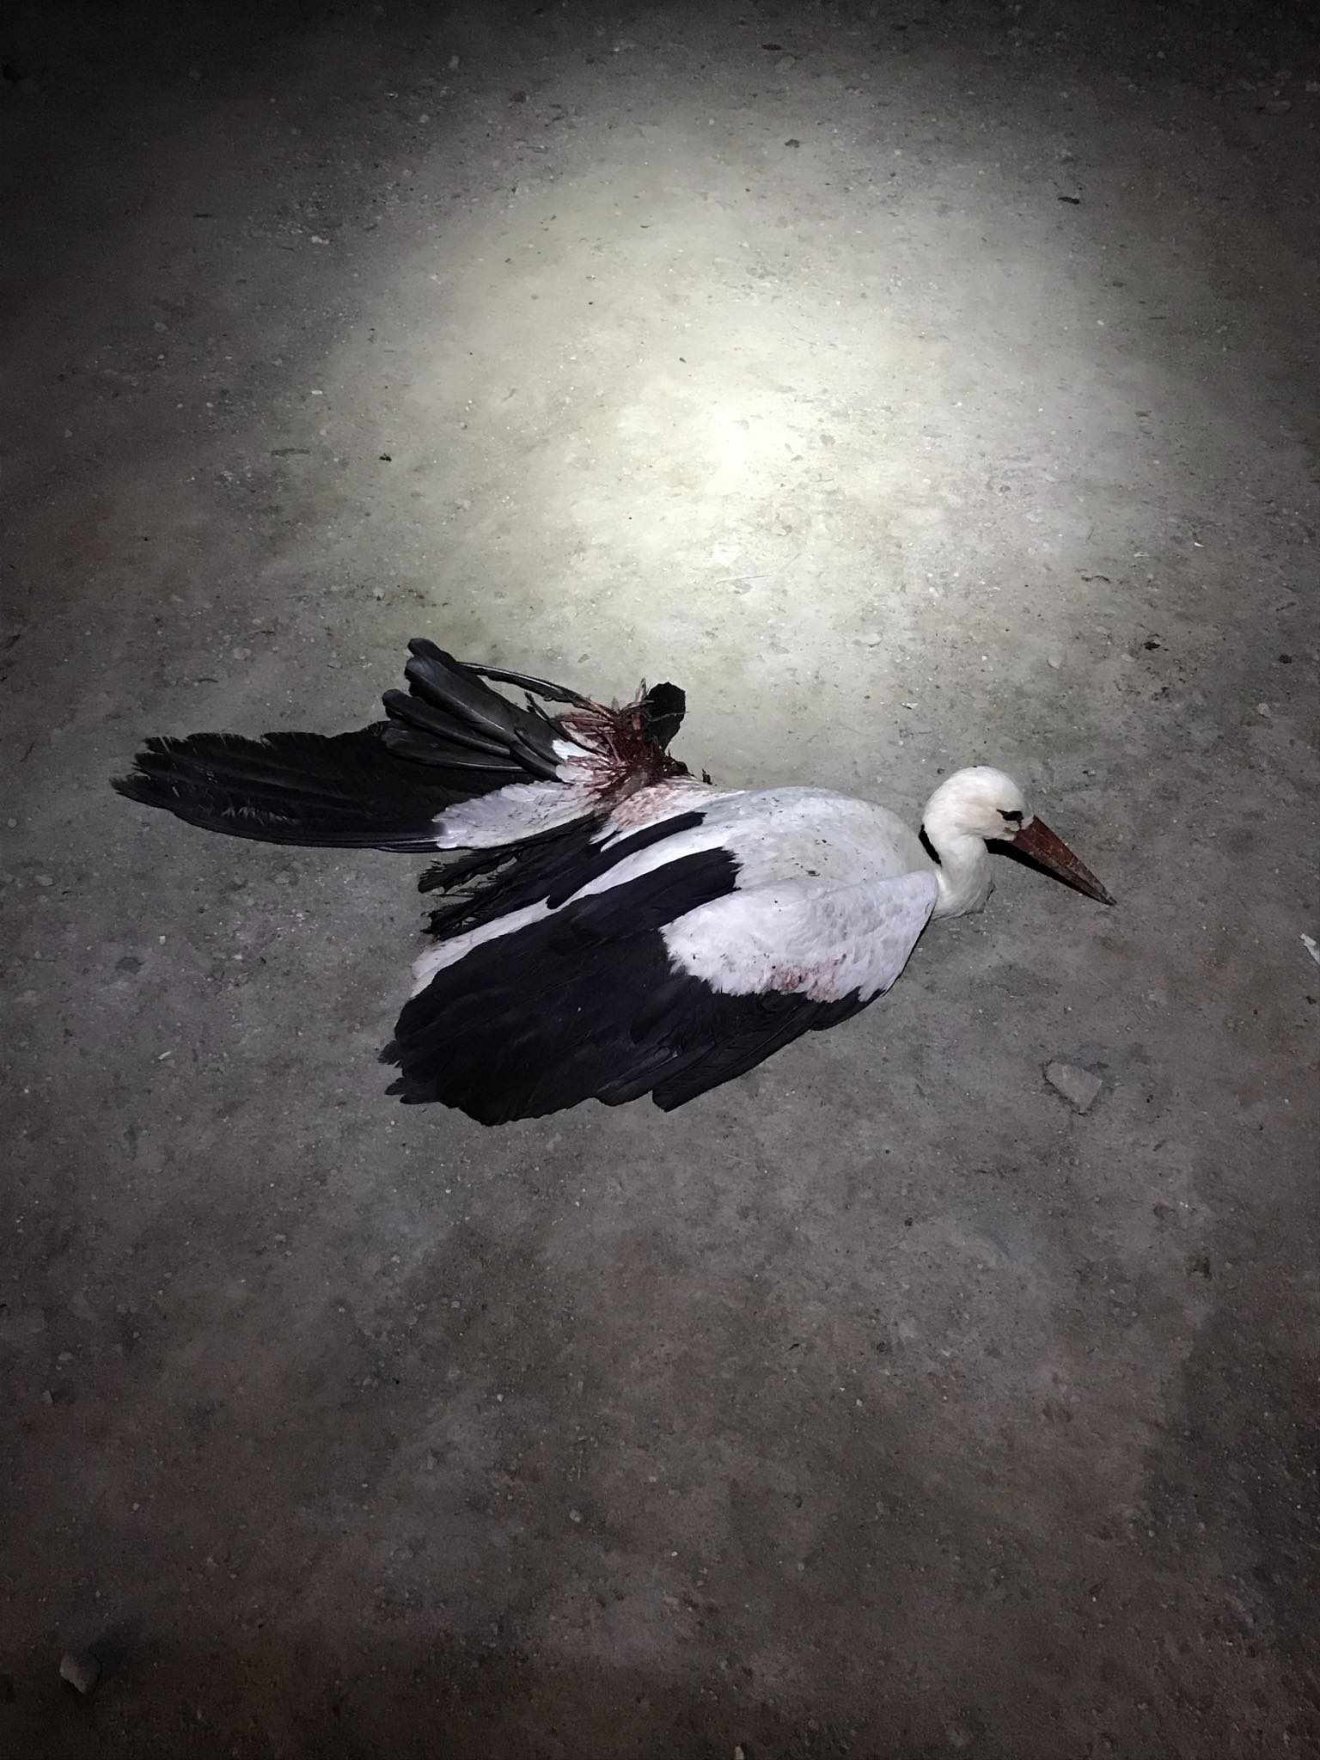 Túlélte a balesetet a gólya, de repülni már nem fog